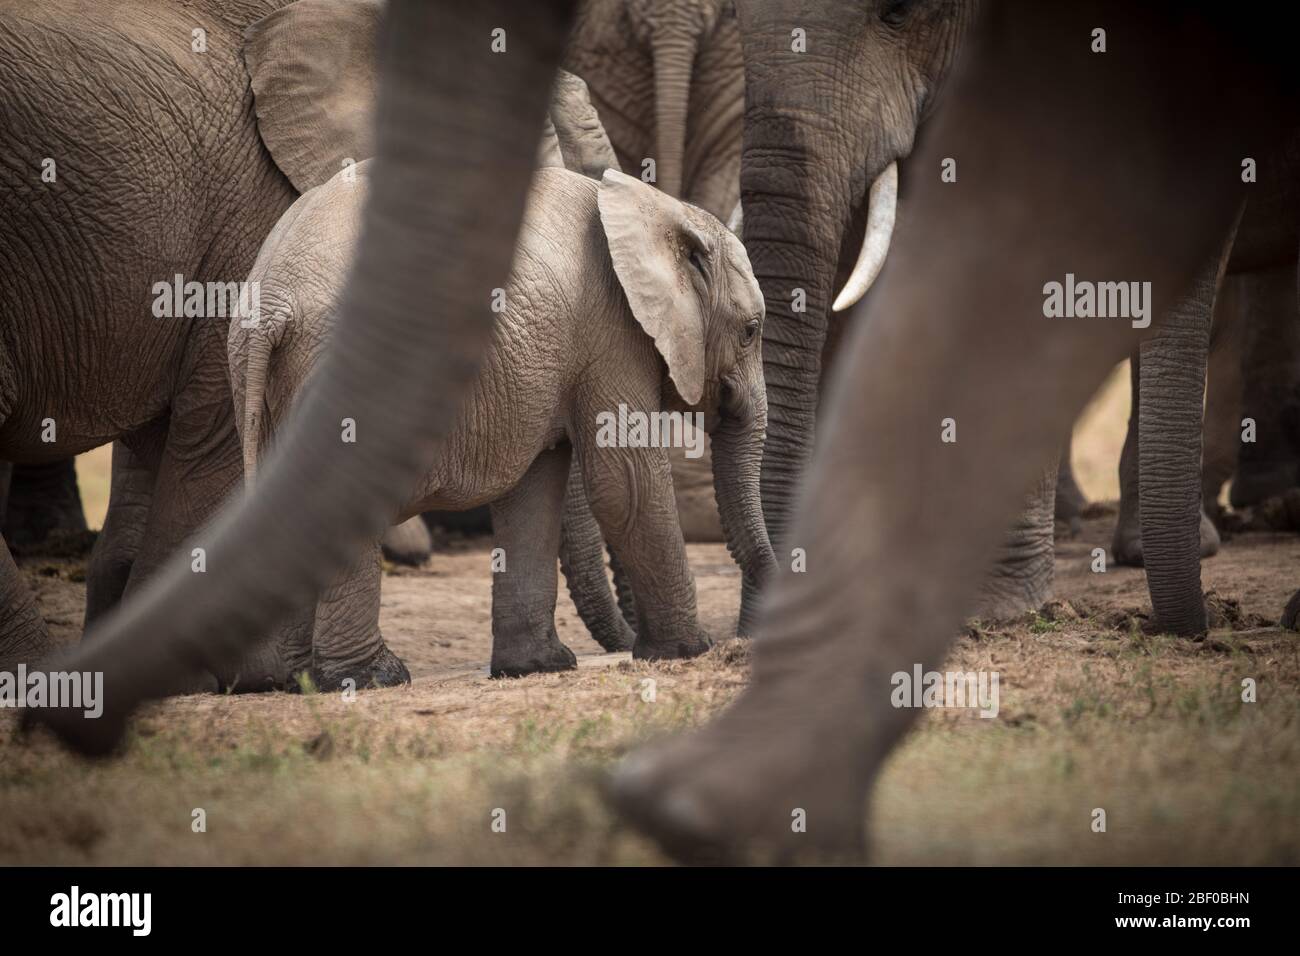 Une famille d'éléphants d'Afrique, Loxodonta africana, bénéficie d'un trou d'eau pour boire et se rafraîchir dans le parc national Addo Elephant, Port Elizabeth, Afrique du Sud Banque D'Images